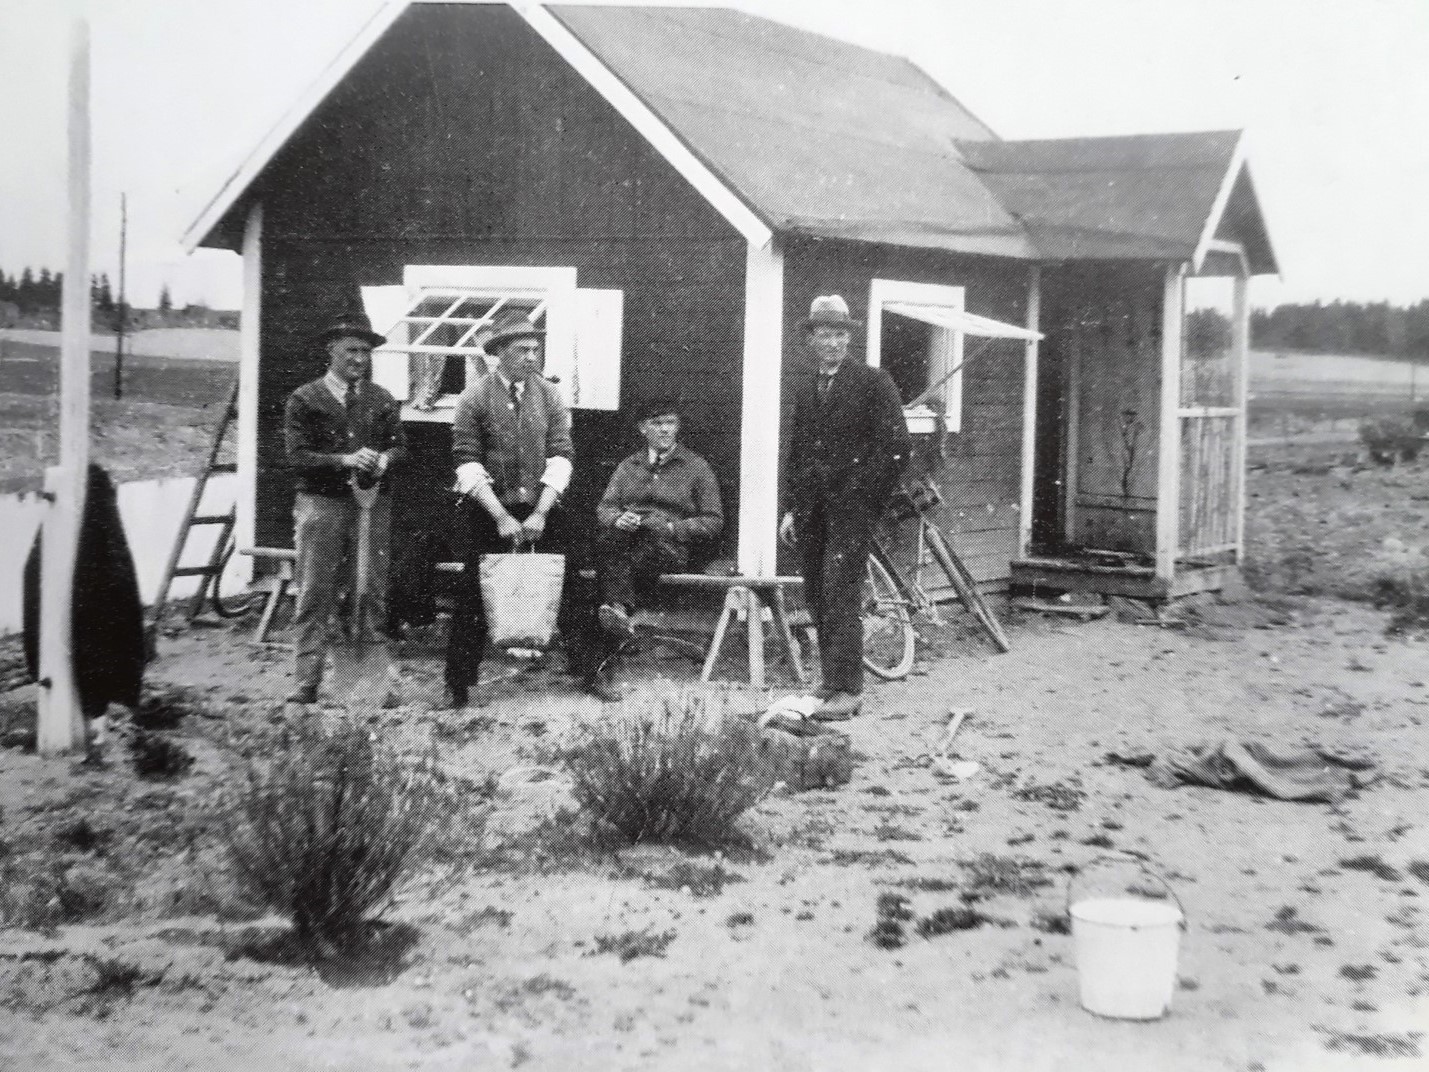 Svartvit bild på kolonistuga med 4 män i hatt poserande utanför.